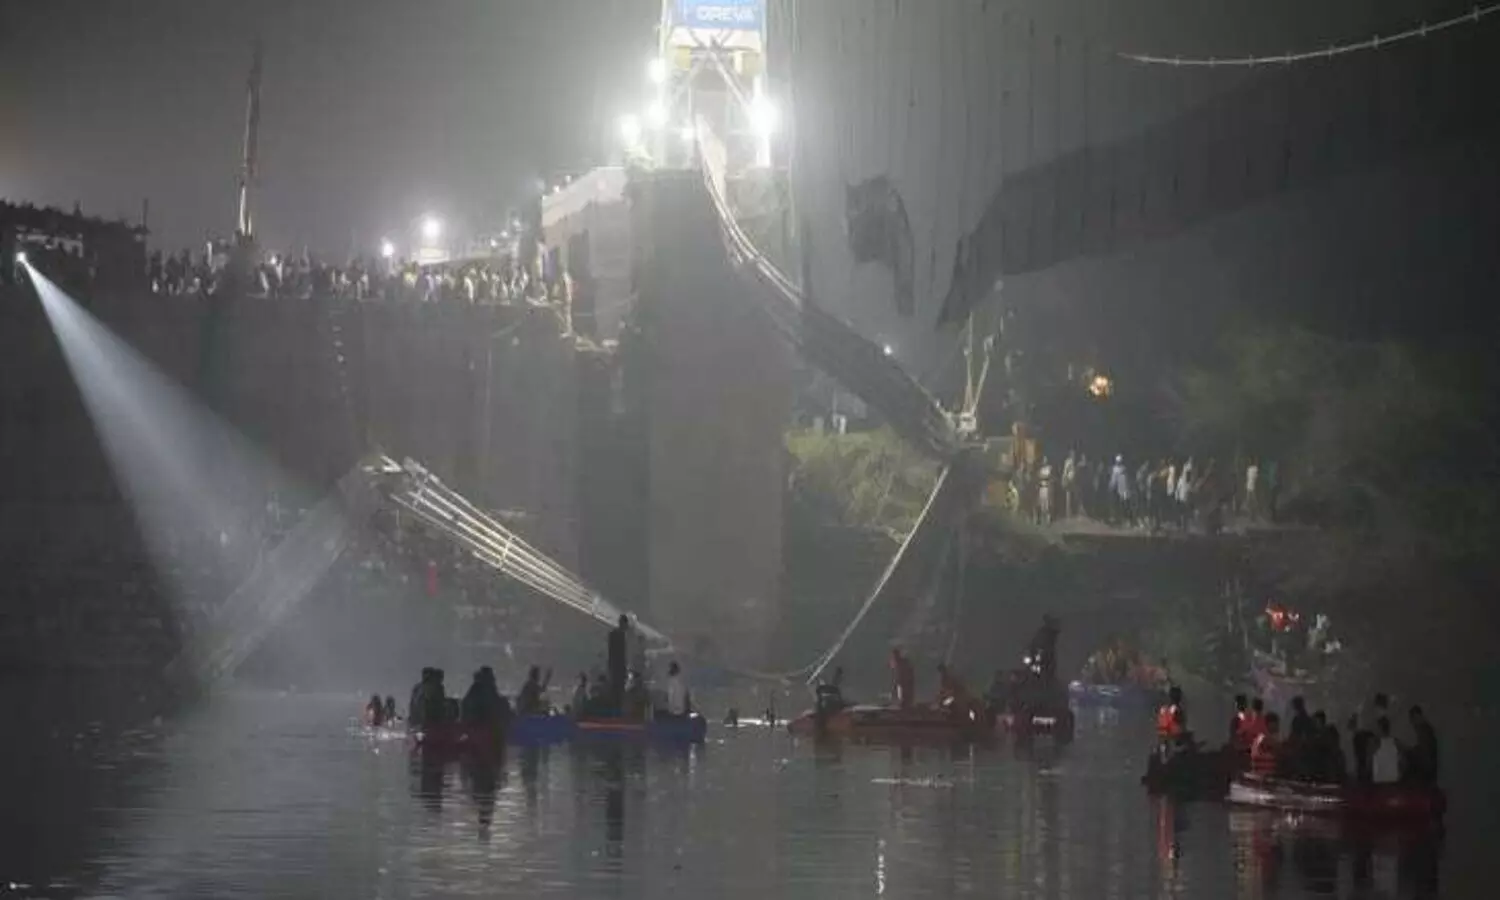 Bridge Accident in India